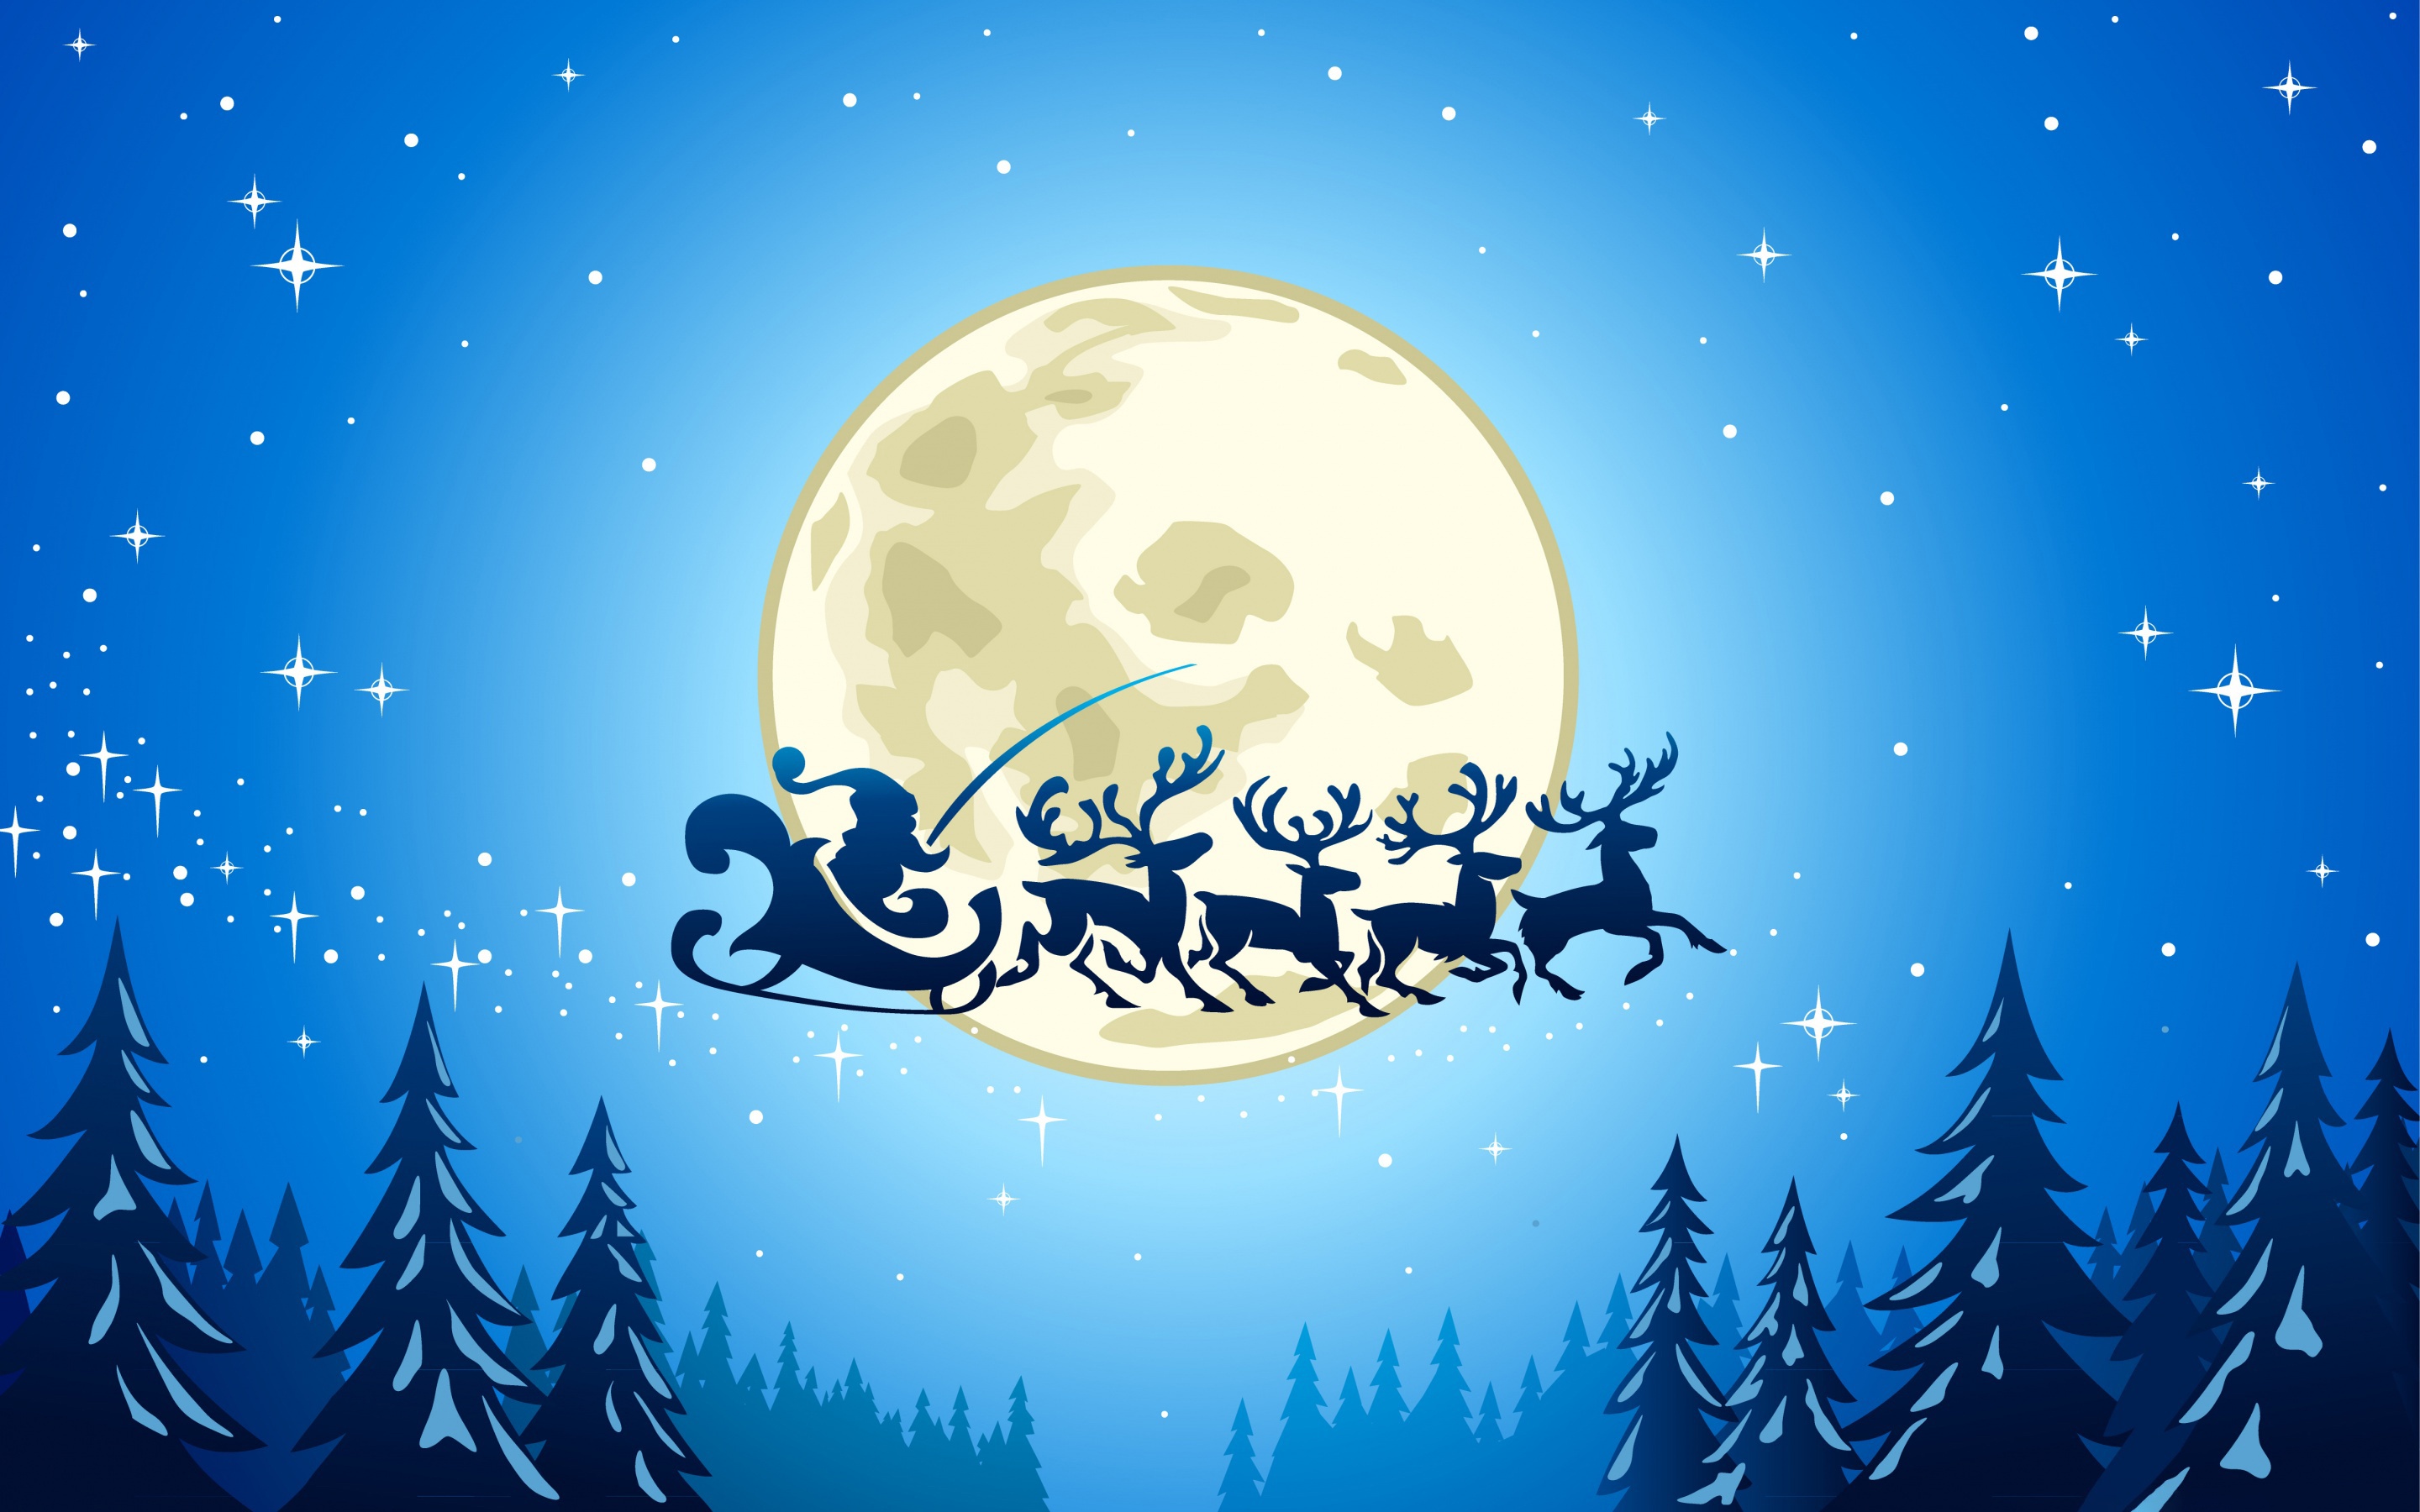 Moon Reindeer Santa Sleigh 2880x1800